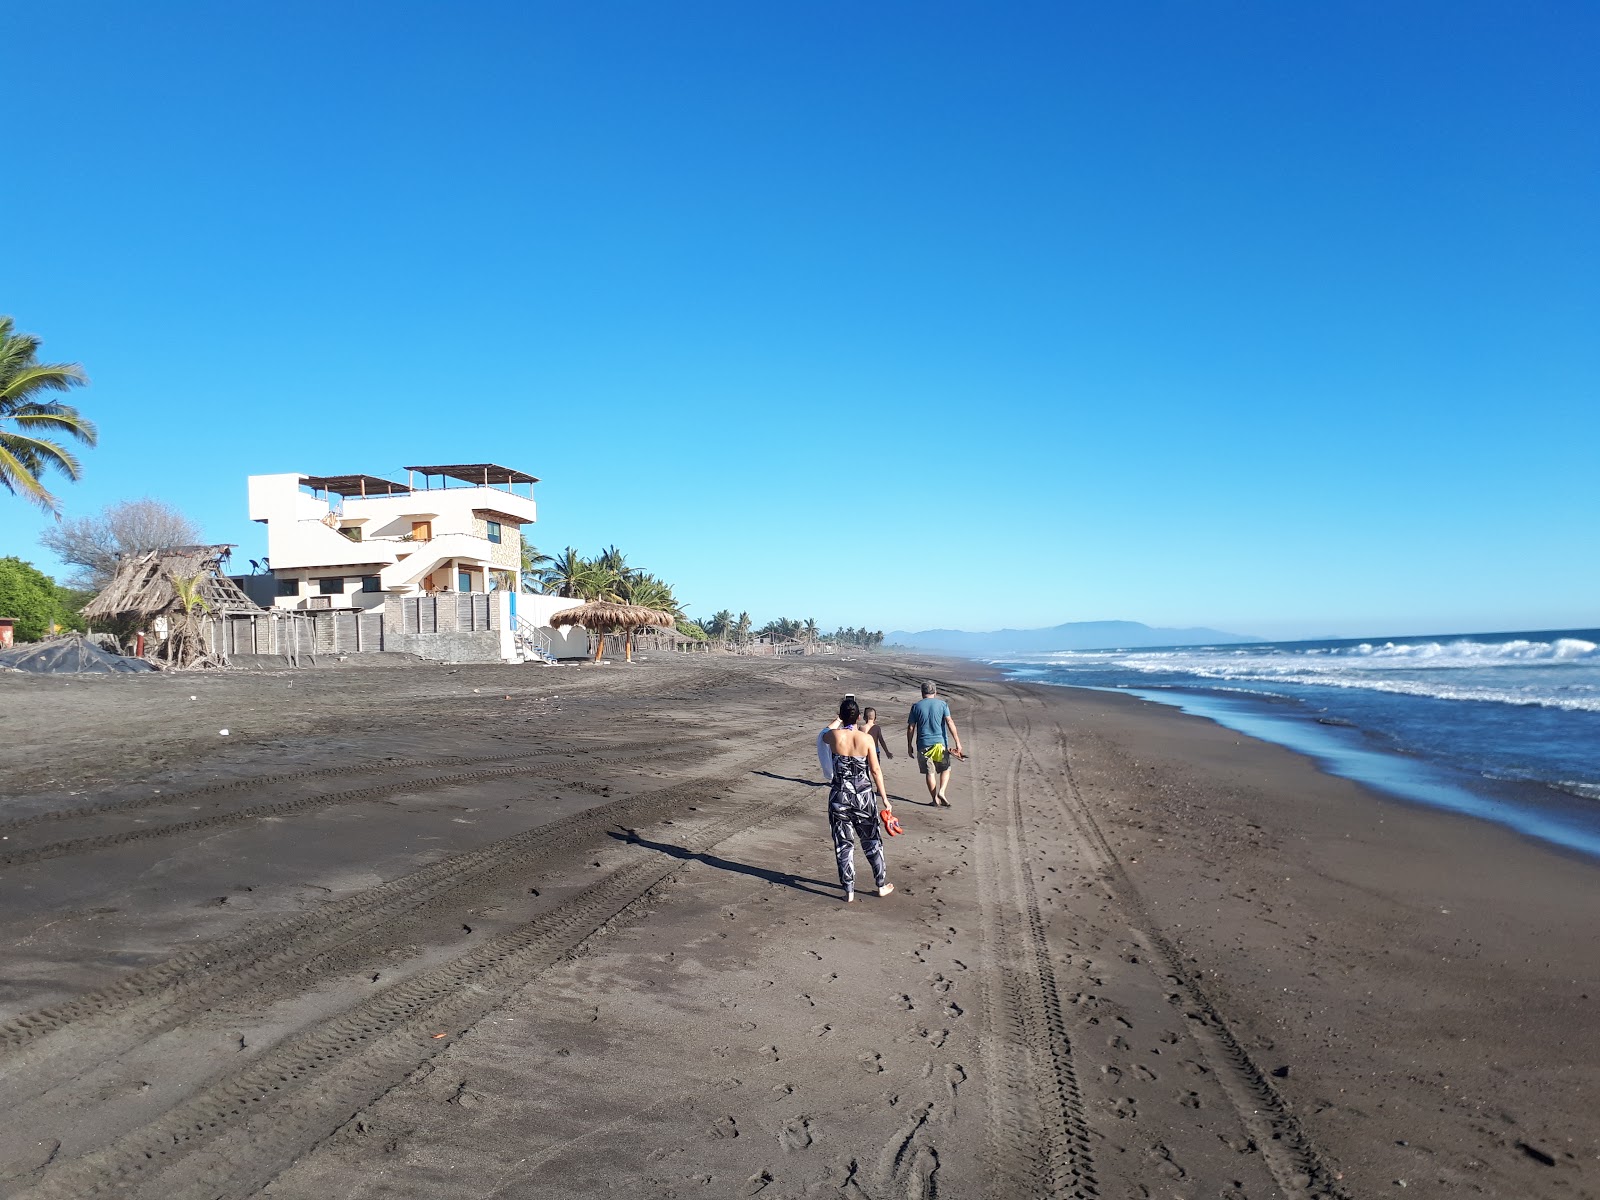 Playa El Real'in fotoğrafı kahverengi kum yüzey ile